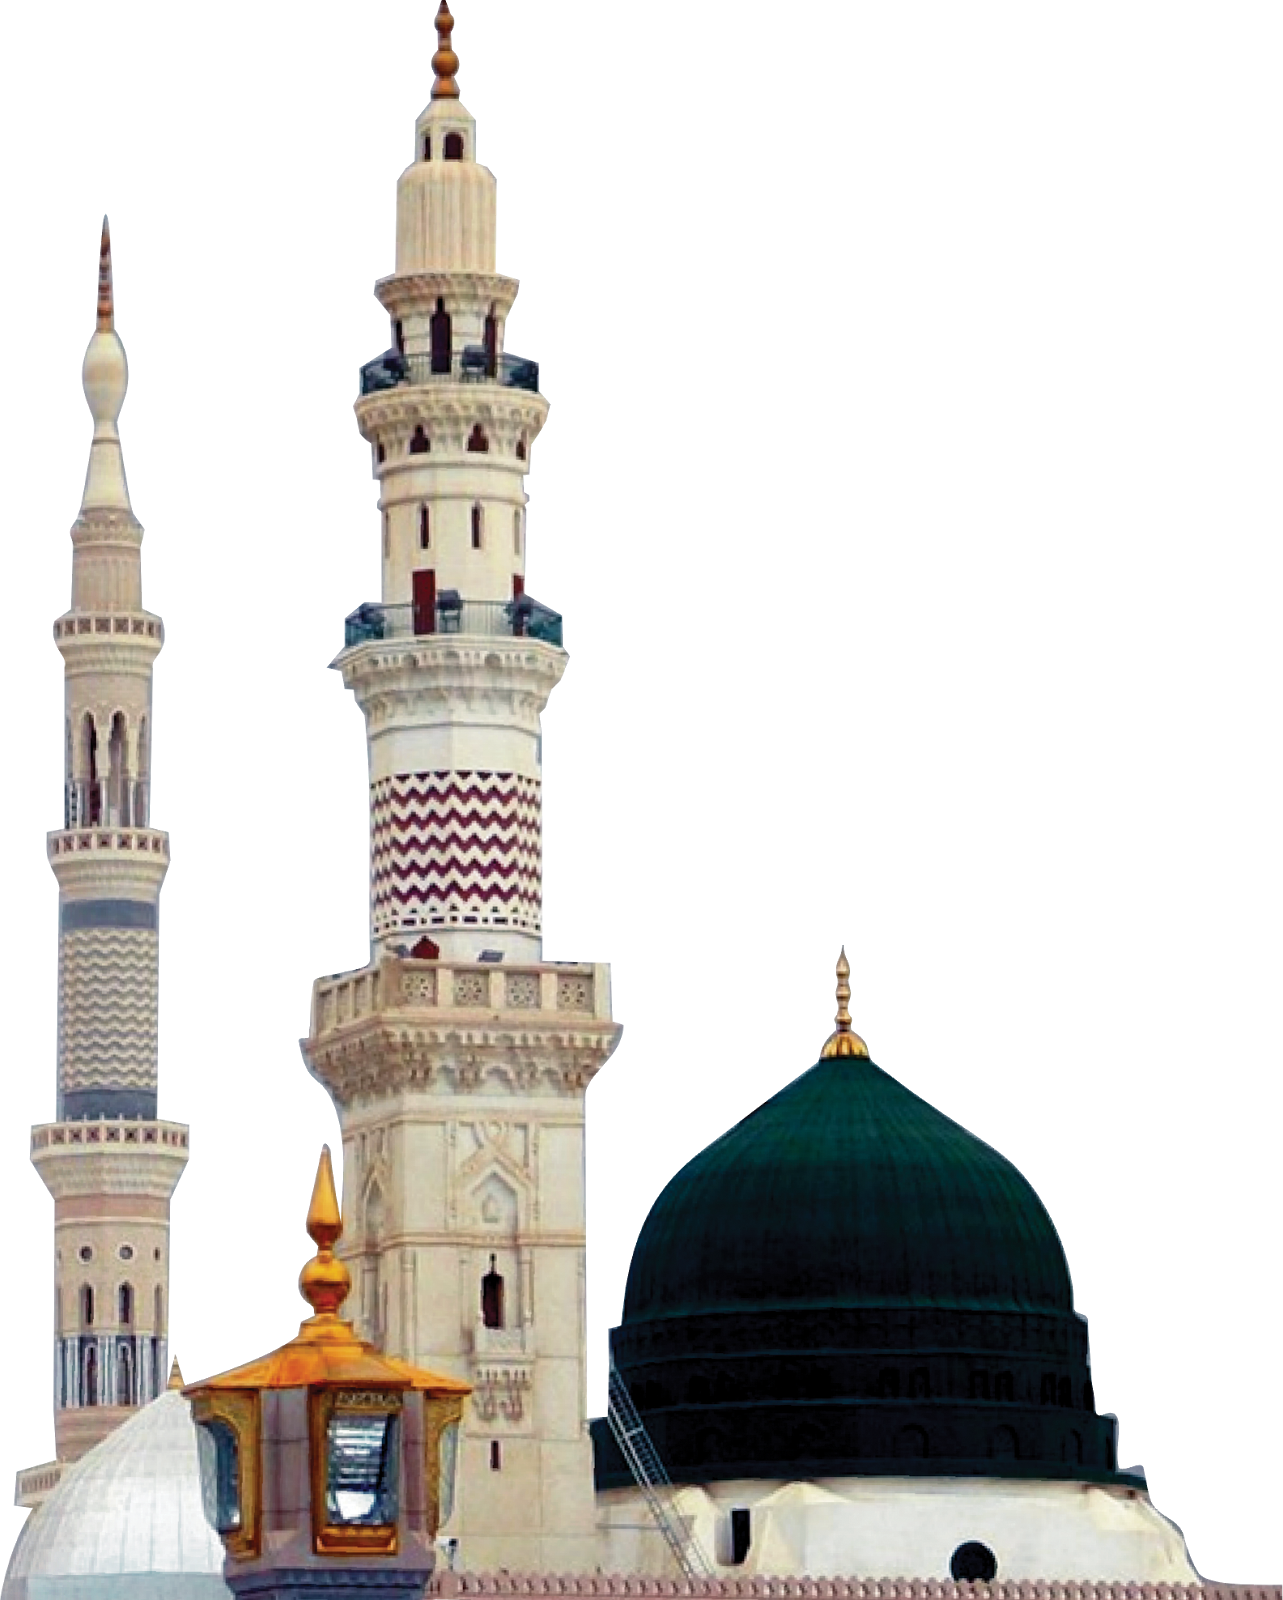 Masjid e nabvi clipart - Masj